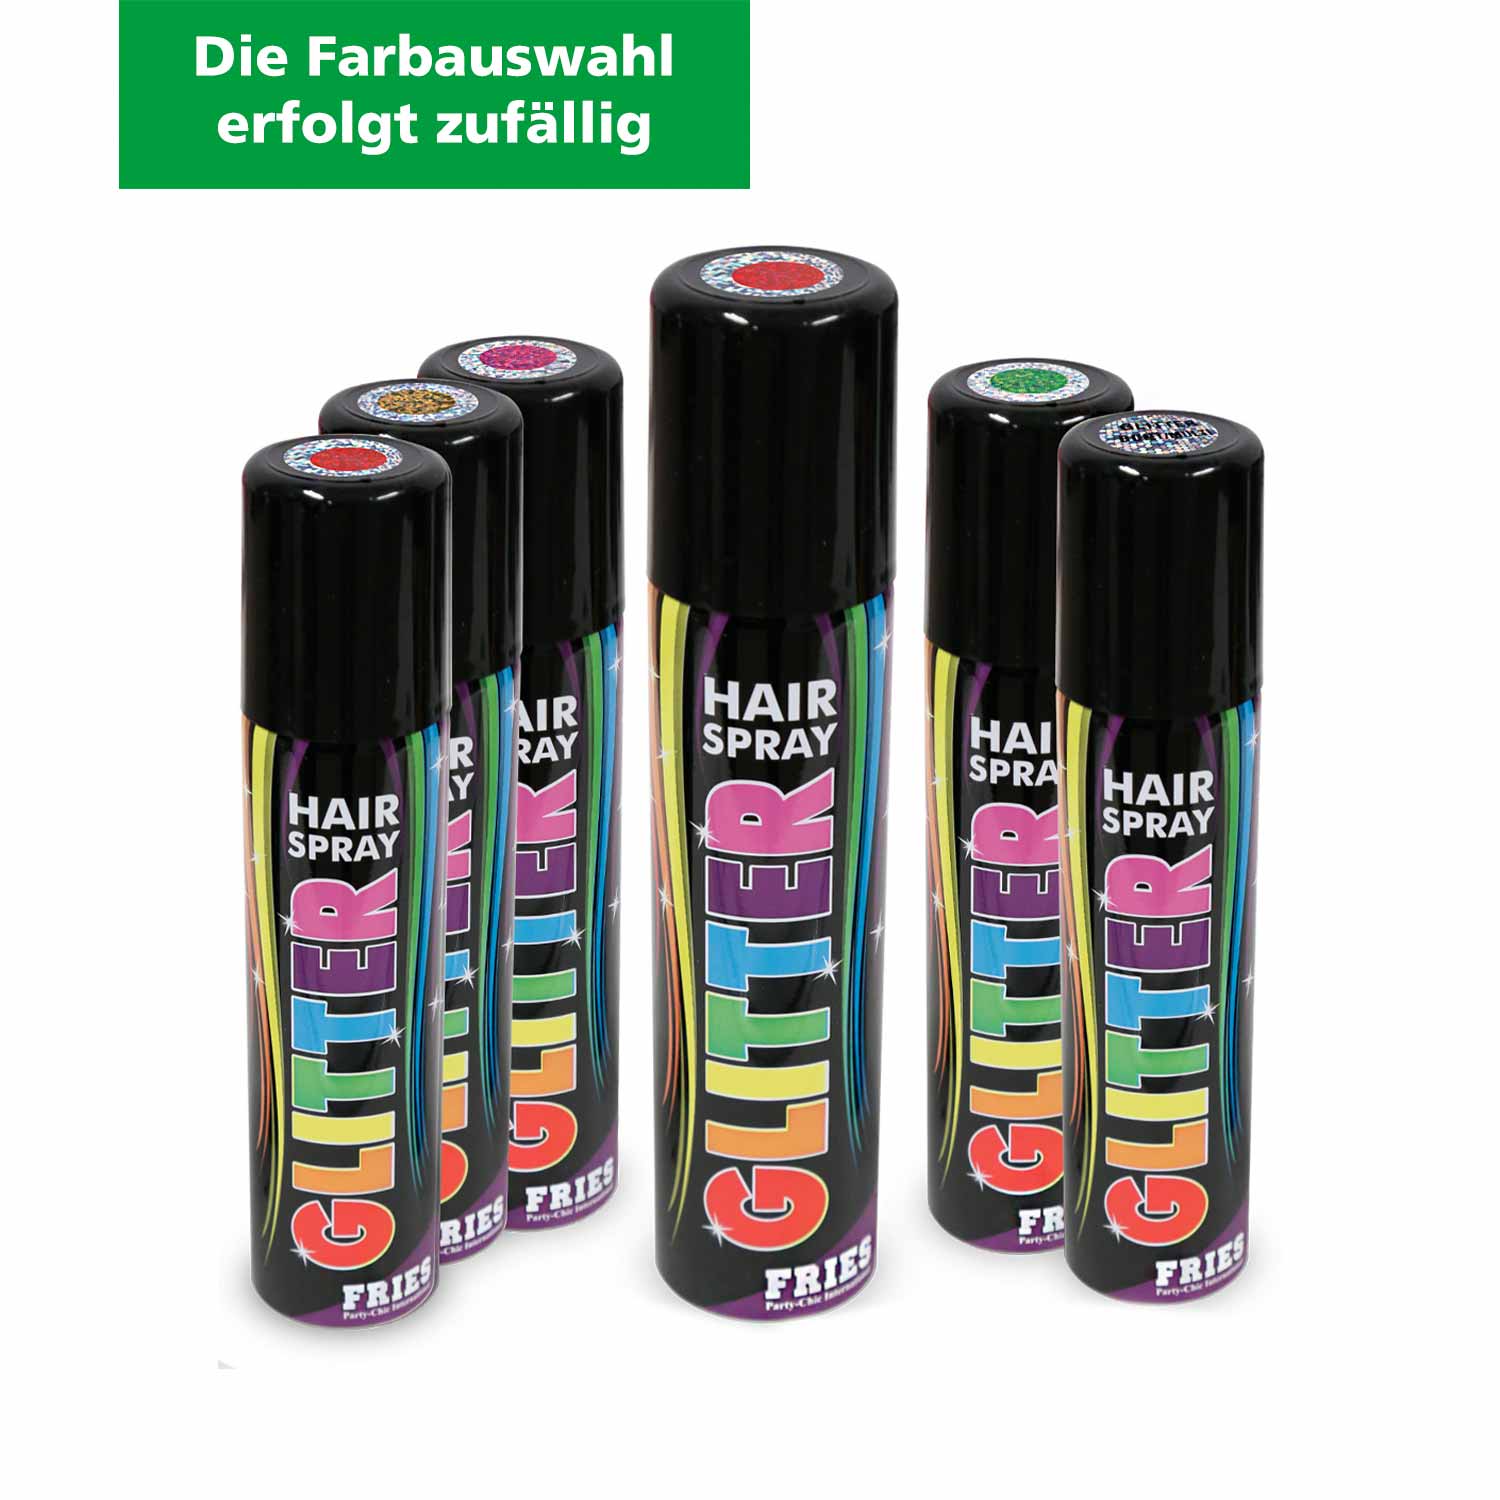 Faschings-Haarspray glitter 100 ml verschiedene Farben (Farbauswahl erfolgt zufällig)